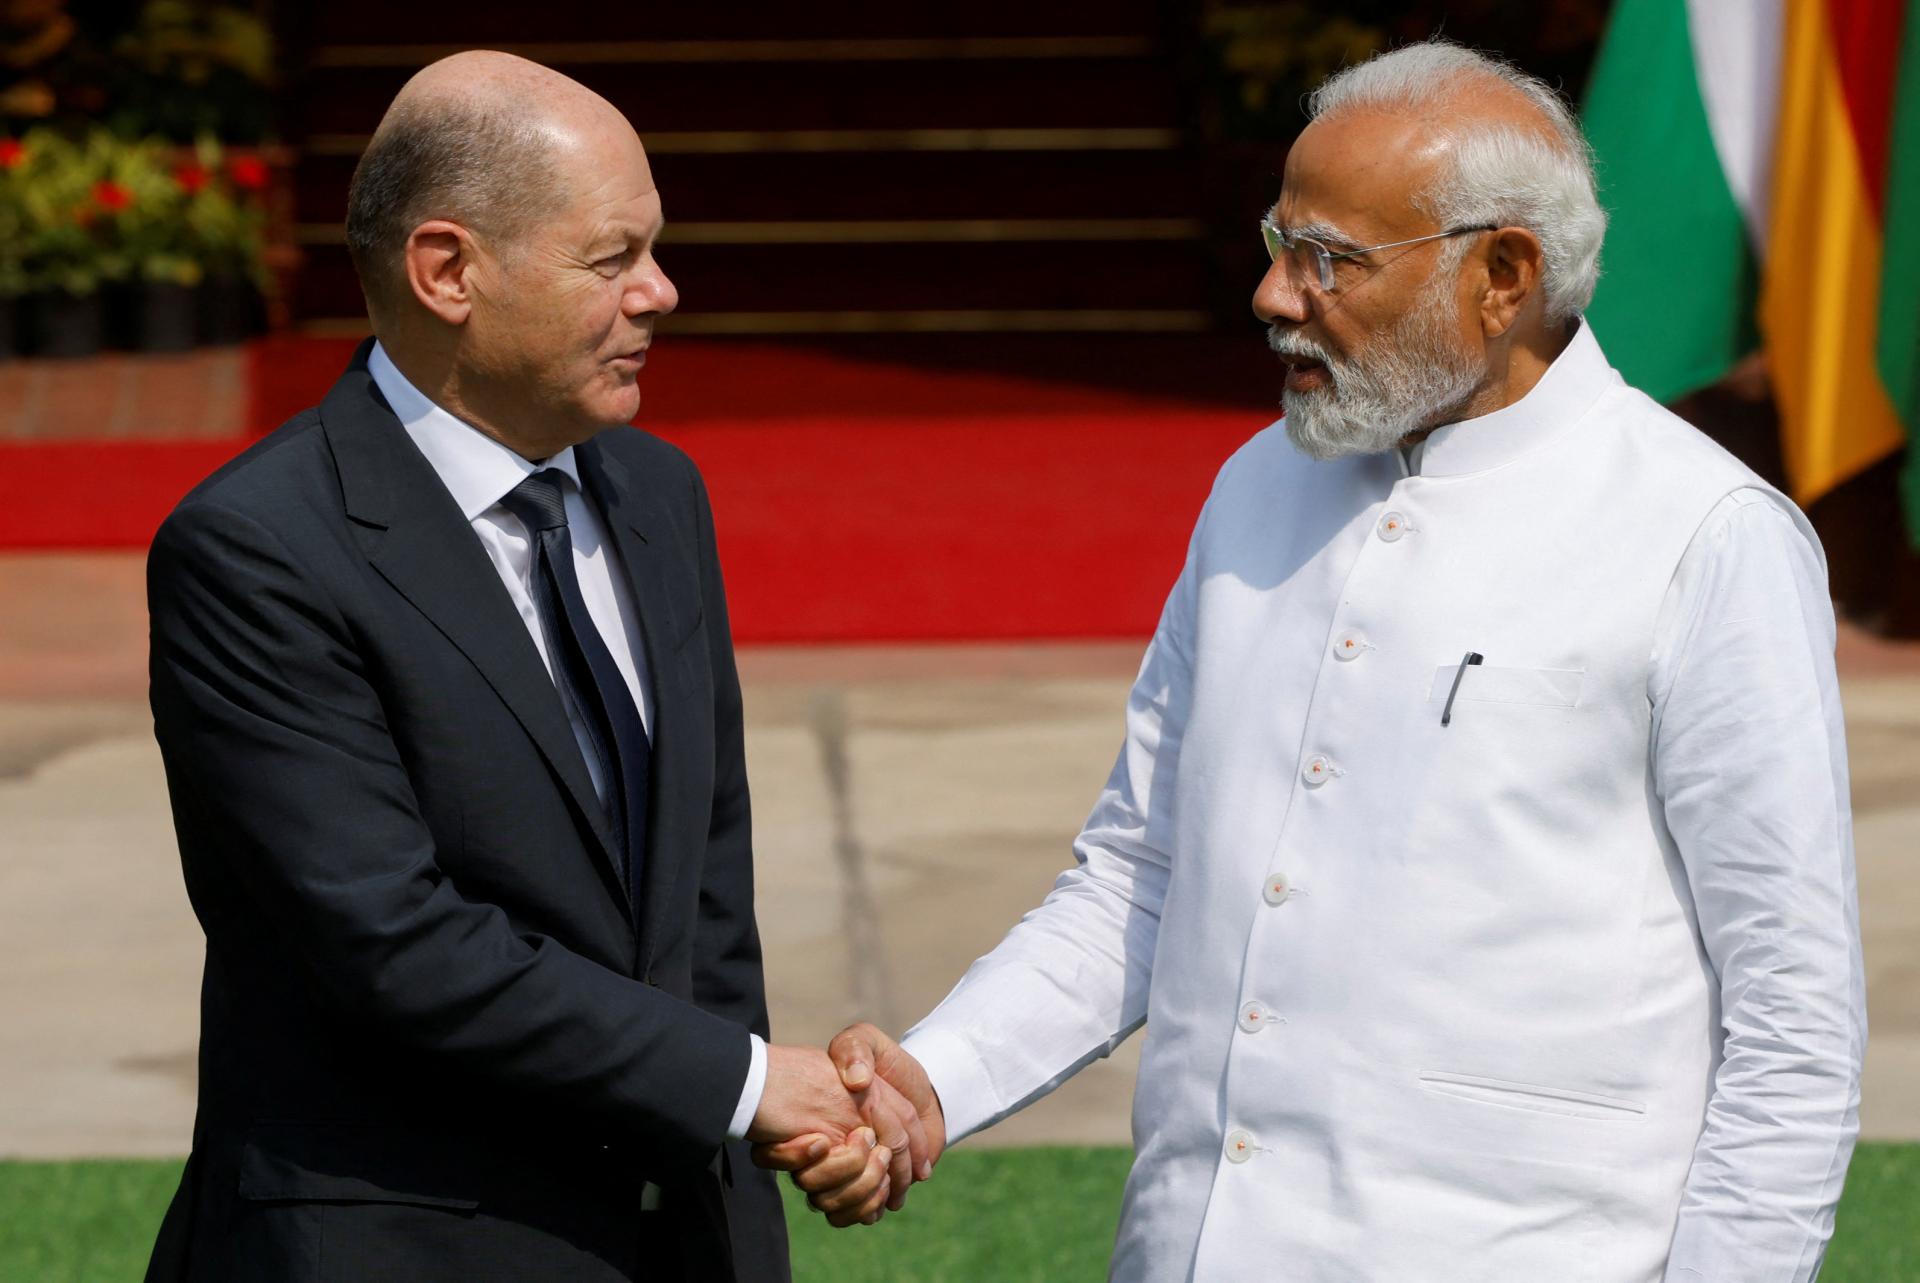 Nemecký kancelár podporil dohodu o voľnom obchode medzi Európskou úniou a Indiou